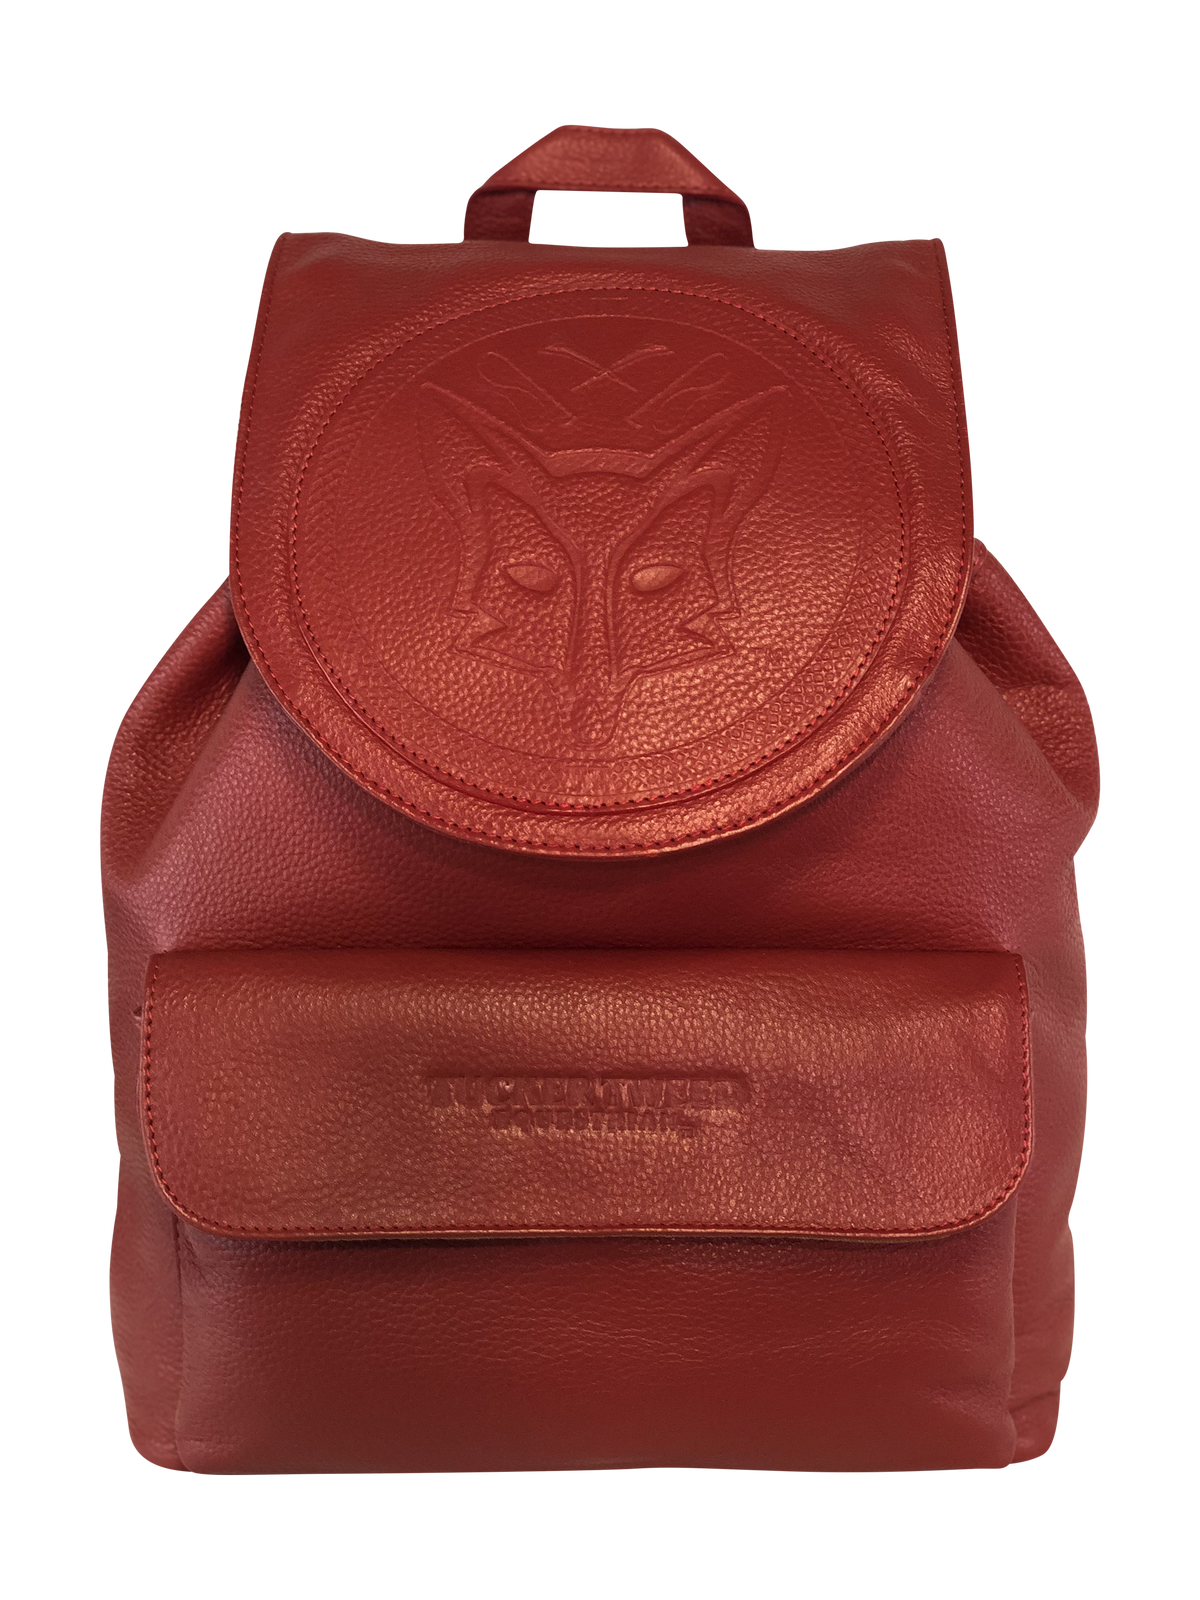 Tucker Tweed Equestrian Leather Handbags Fox Hunting Red Brandywine Backpack: Fox Hunting